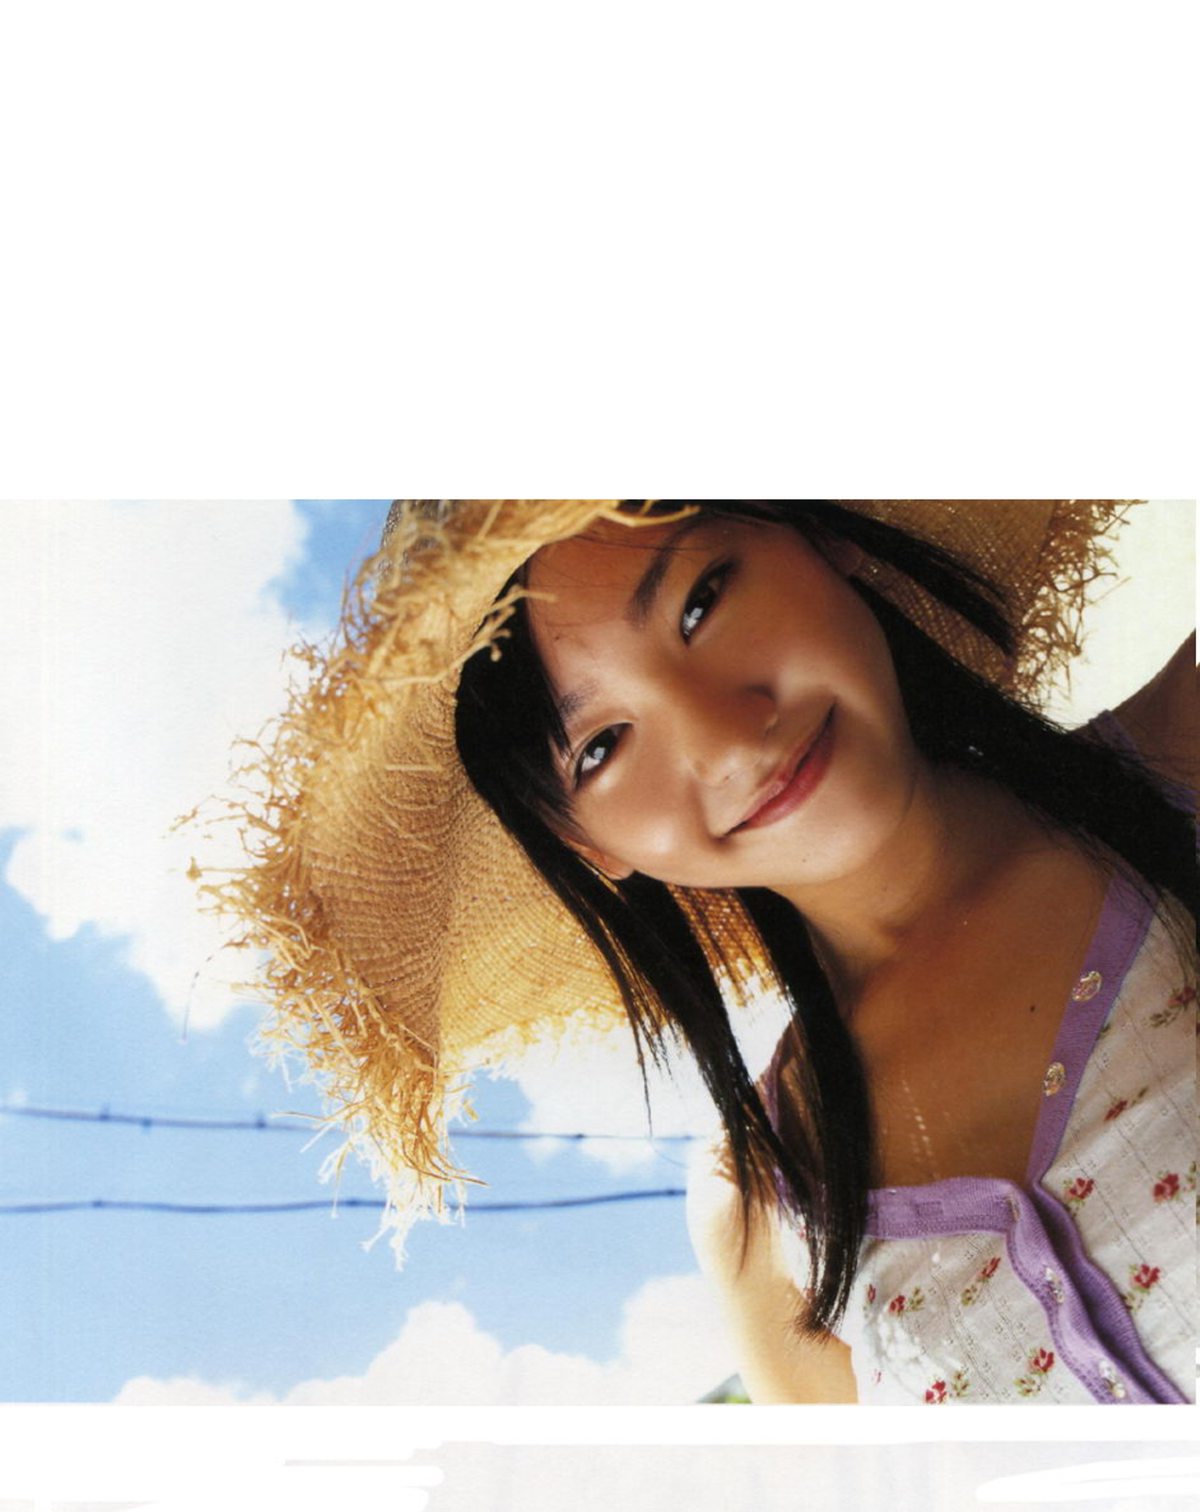 Photobook Yui Aragaki 新垣結衣 Chura Chura ちゅら ちゅら 2006 03 03 0047 1975483116.jpg